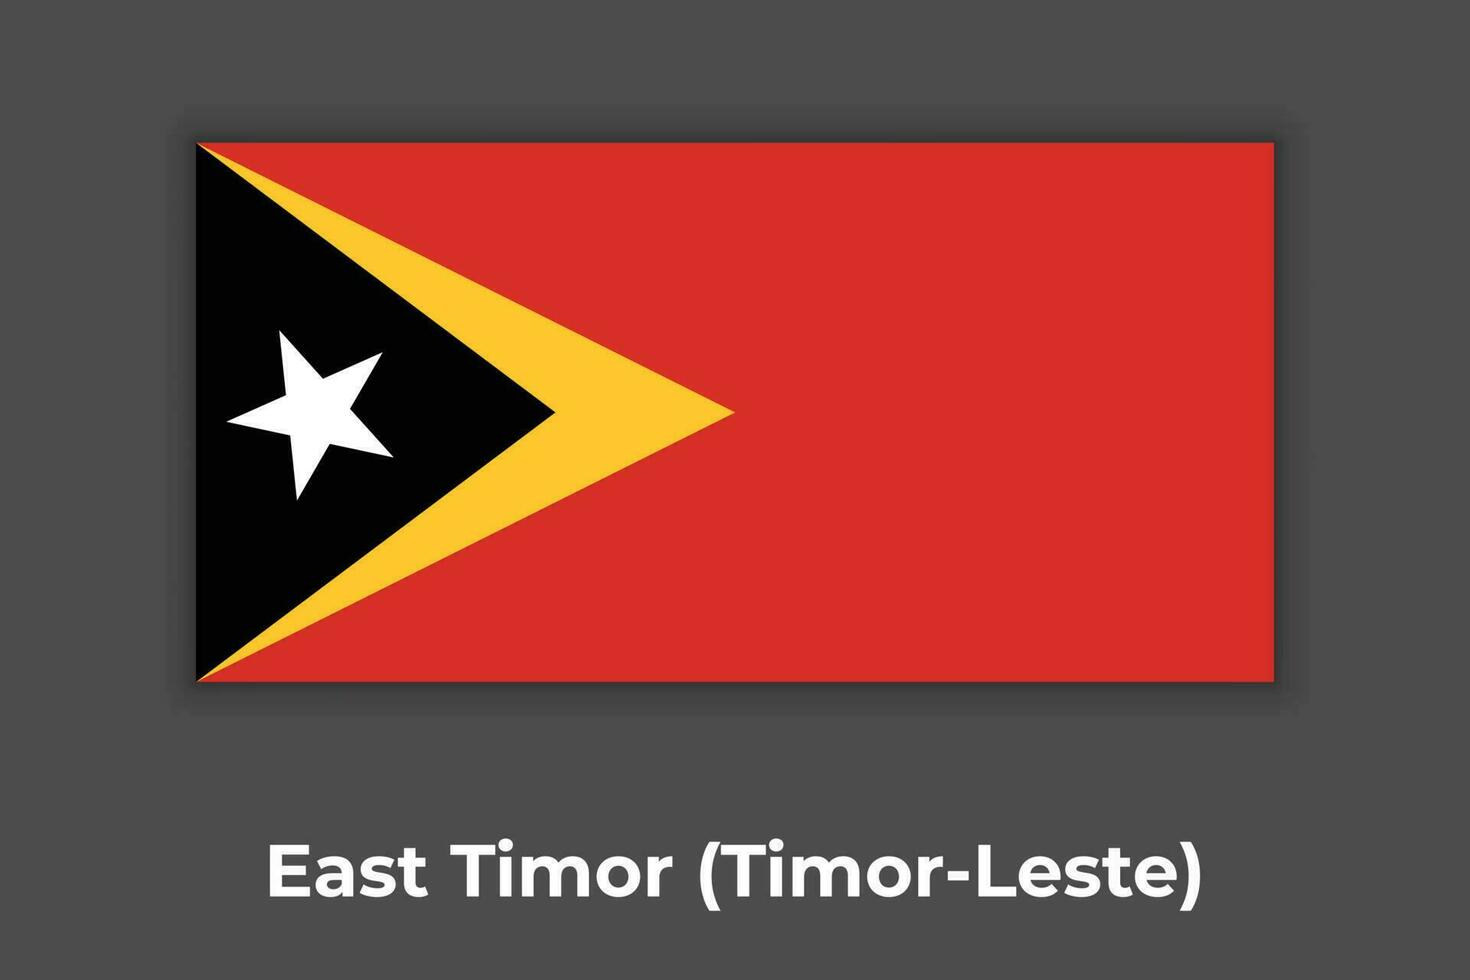 est timor timor leste bandiera, nazionale est timor timor leste ufficiale colori e proporzione correttamente vettore